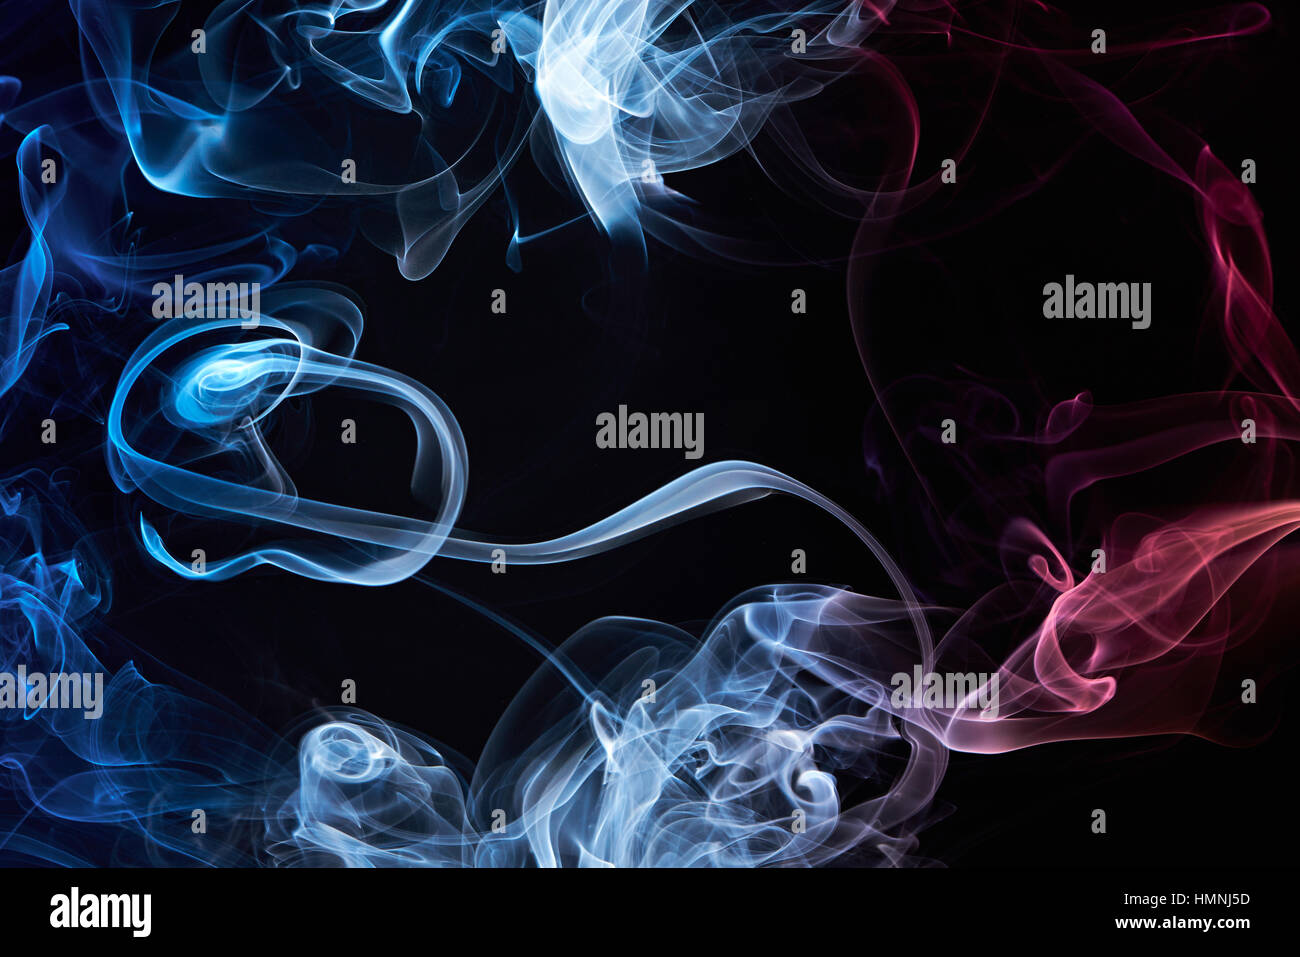 colorful smoke frame isolated on black background Stock Photo